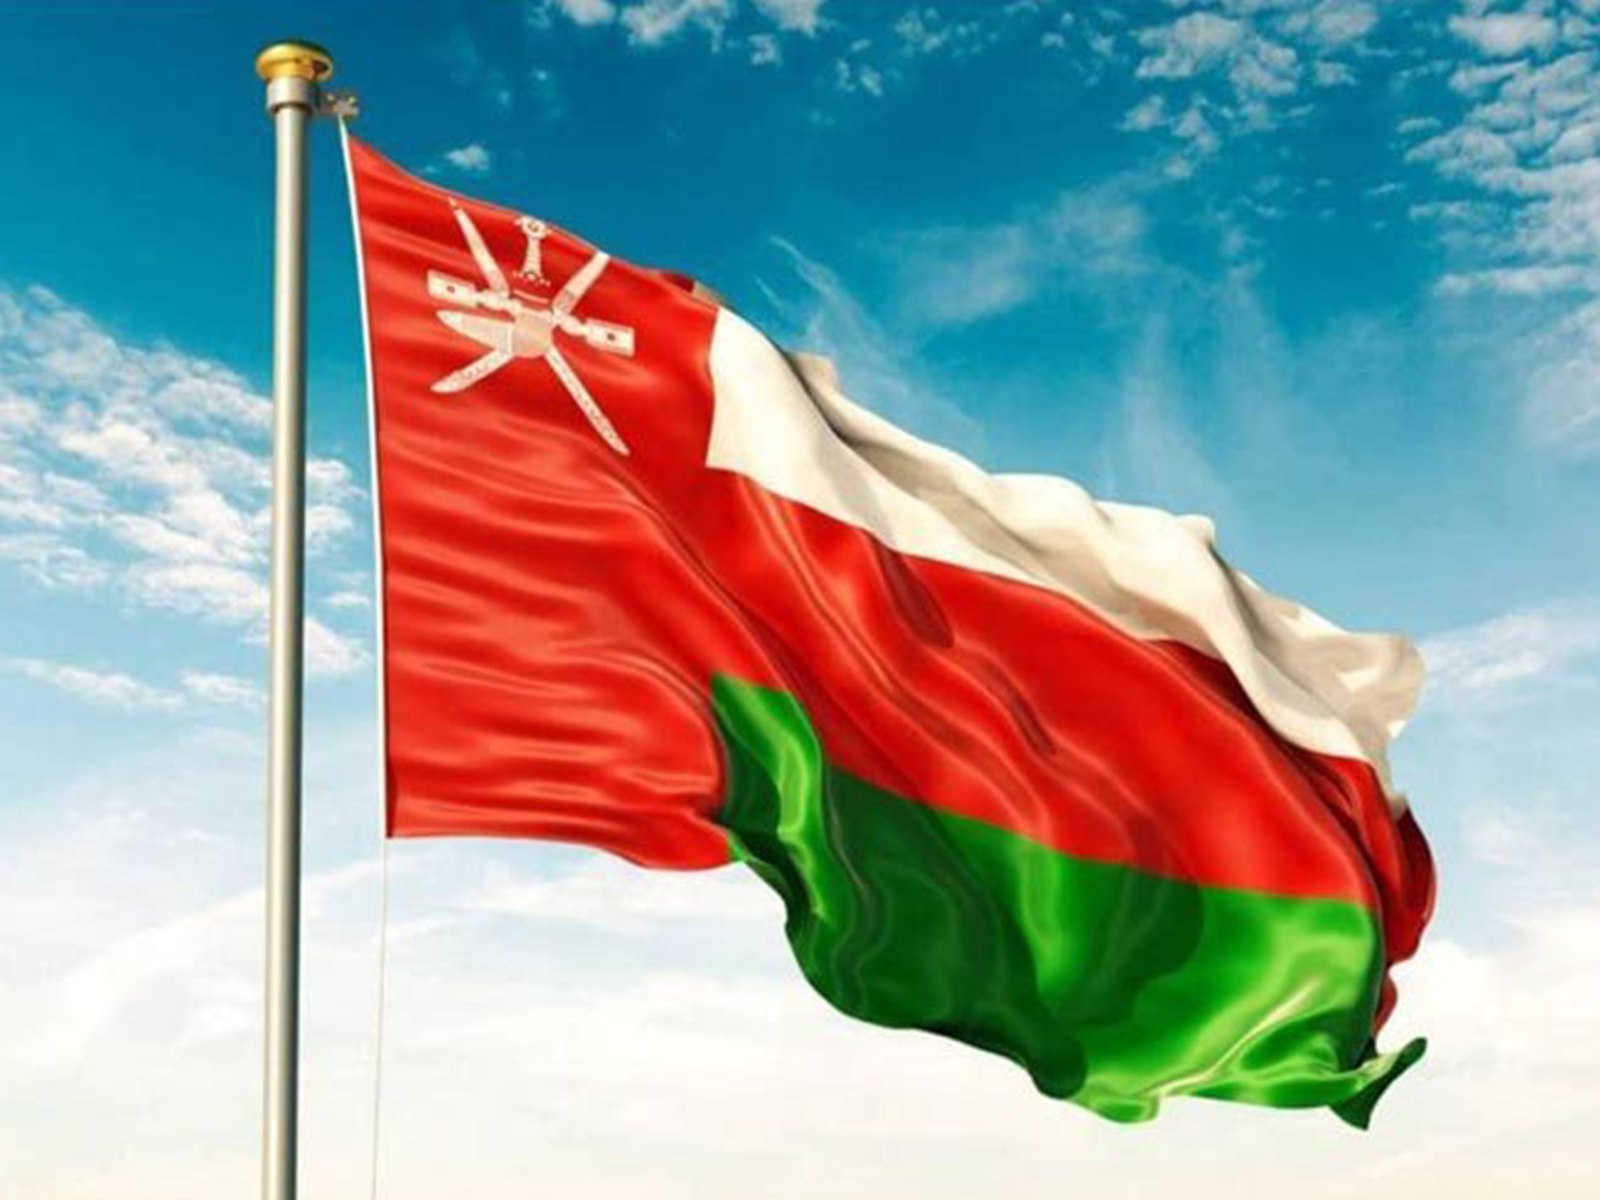 العطل الرسمية في عمان لسنة 2022